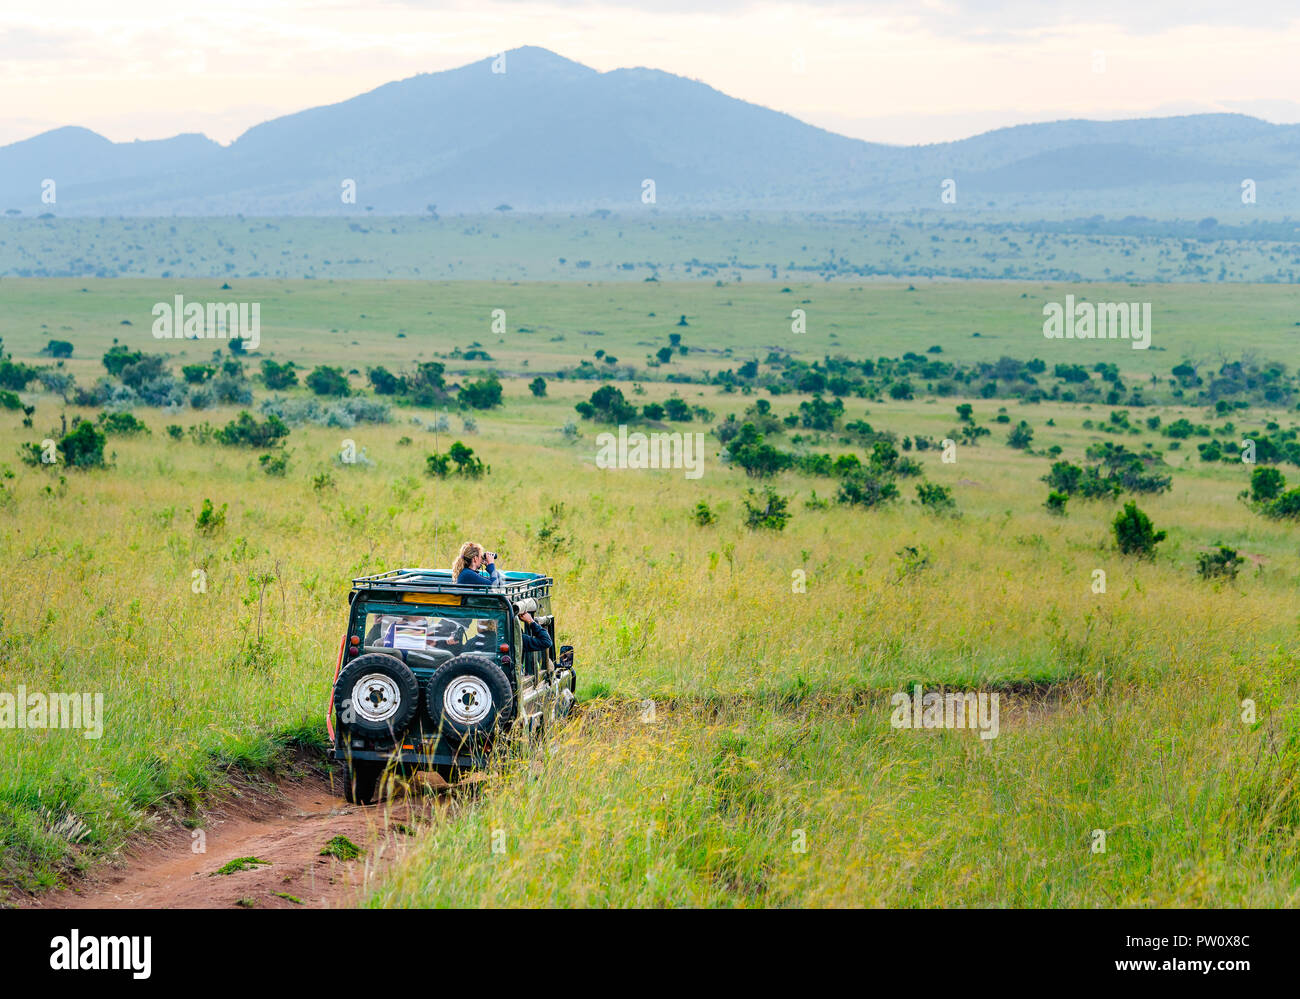 Africa jeep safari guida su Masai Mara e il parco nazionale del Serengeti sulla savana verde con il blu del cielo. I turisti la guida jeep per un safari in Kenya e Ta Foto Stock